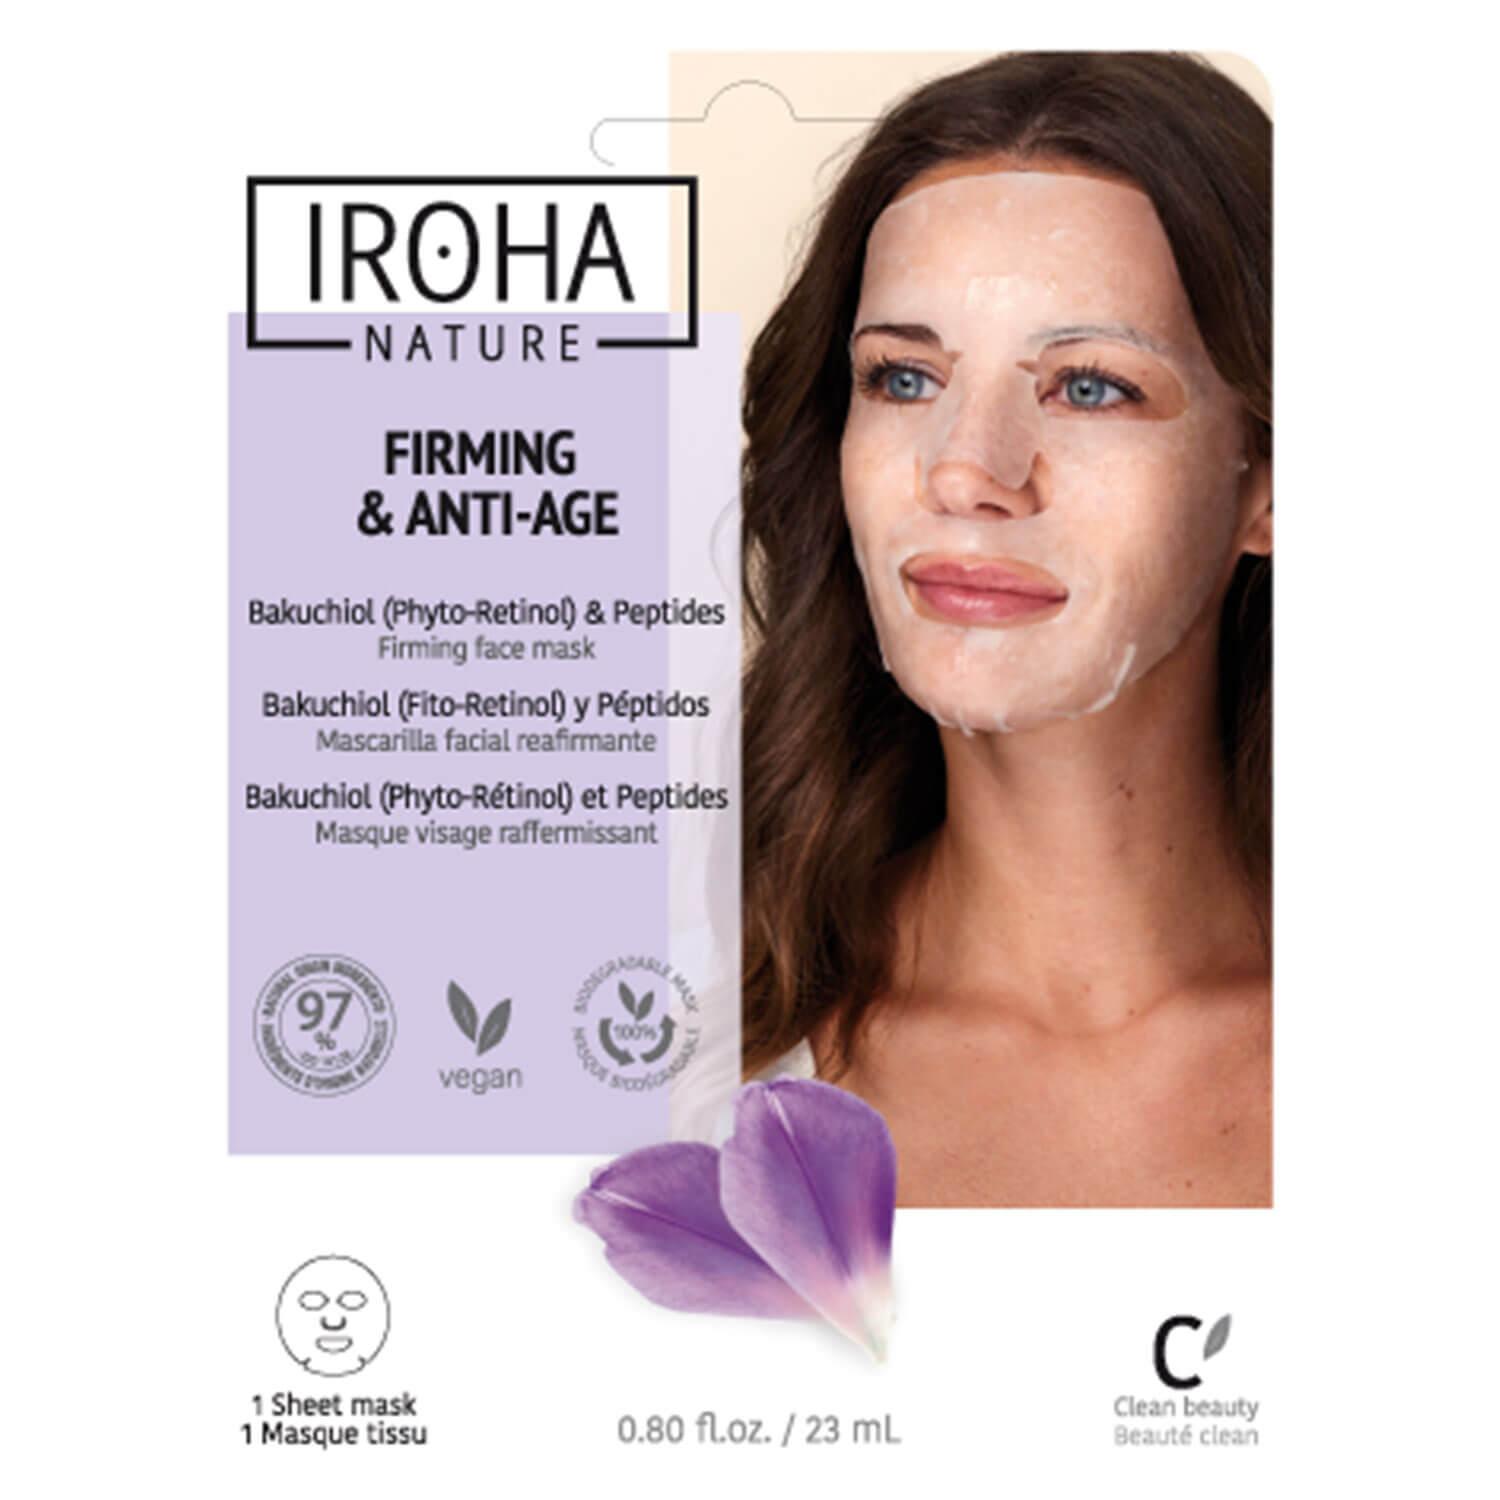 Iroha Nature - Firming & Anti-Age Bakuchiol & Peptides Face Mask